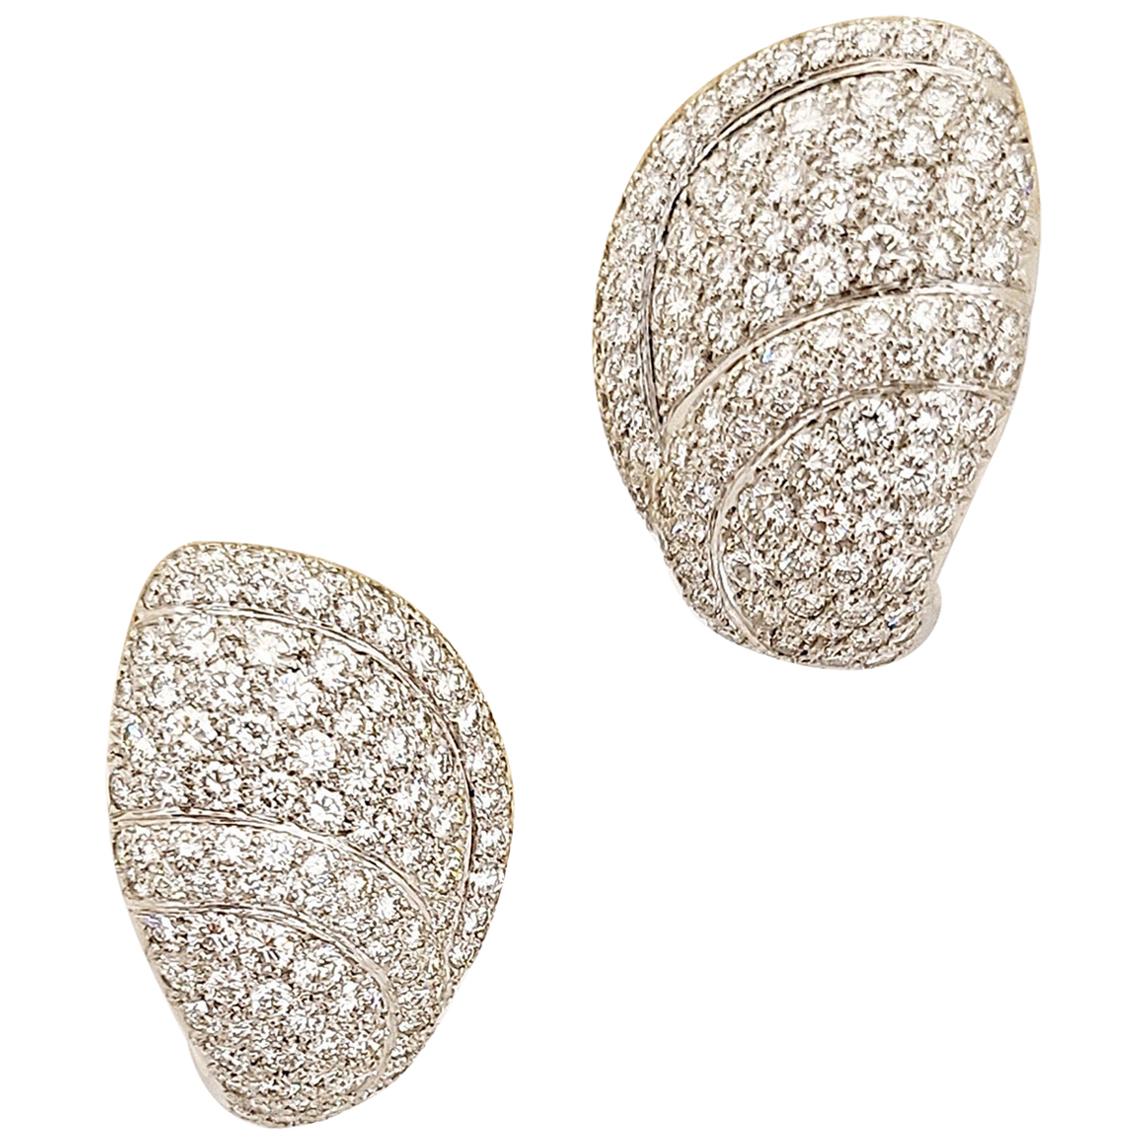 Roger Mathon pour Cellini NYC Boucles d'oreilles en or blanc 18 carats et diamants de 5,39 carats